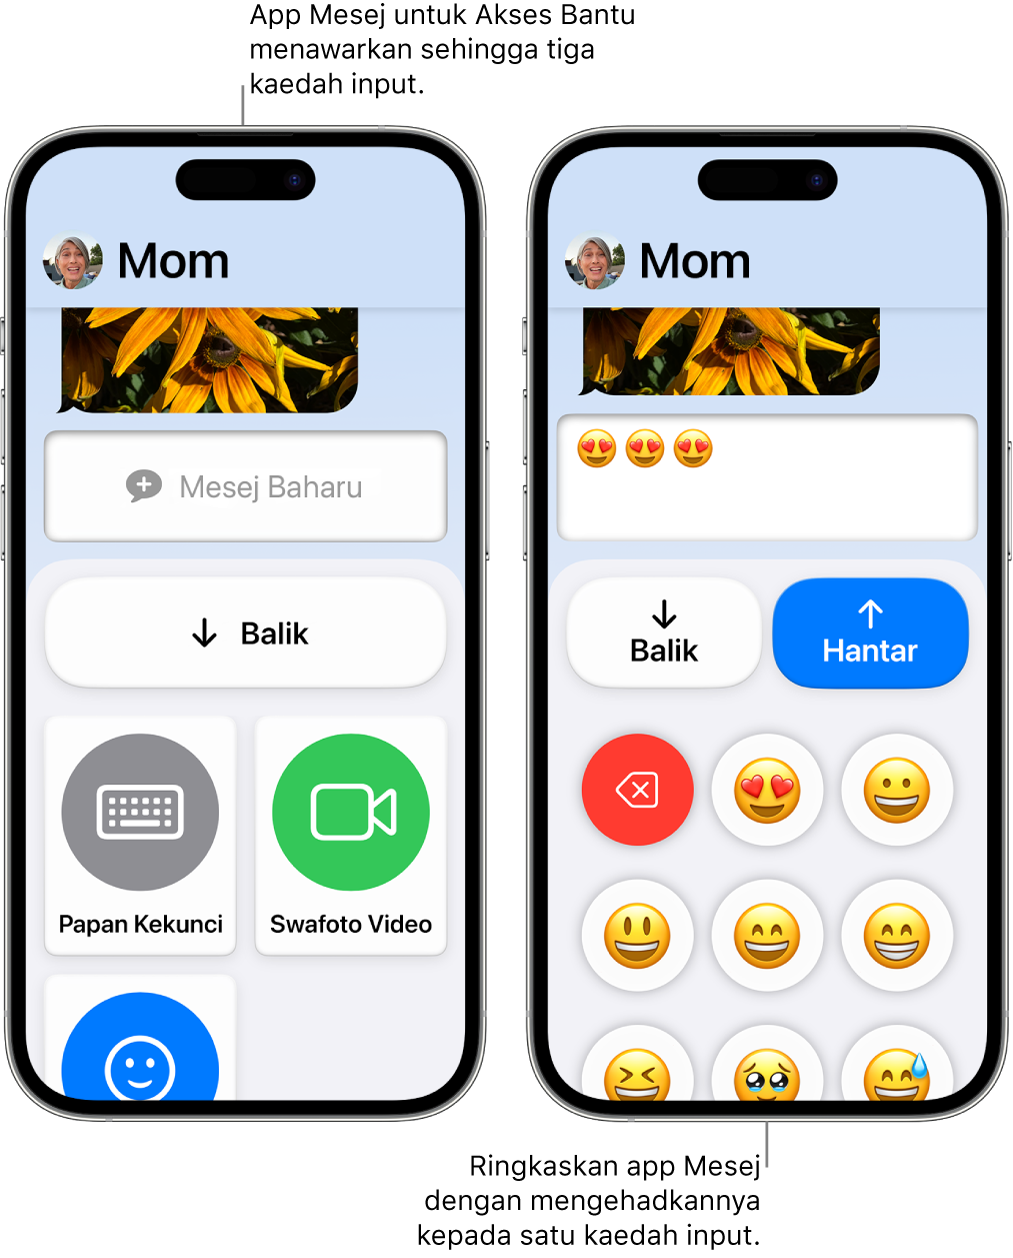 Dua iPhone dalam Akses Bantu. Satu iPhone menunjukkan app Mesej dengan kaedah input untuk dipilih oleh pengguna, seperti Papan Kekunci atau Swafoto Video. iPad lain menunjukkan mesej sedang dihantar menggunakan papan kekunci emoji sahaja.